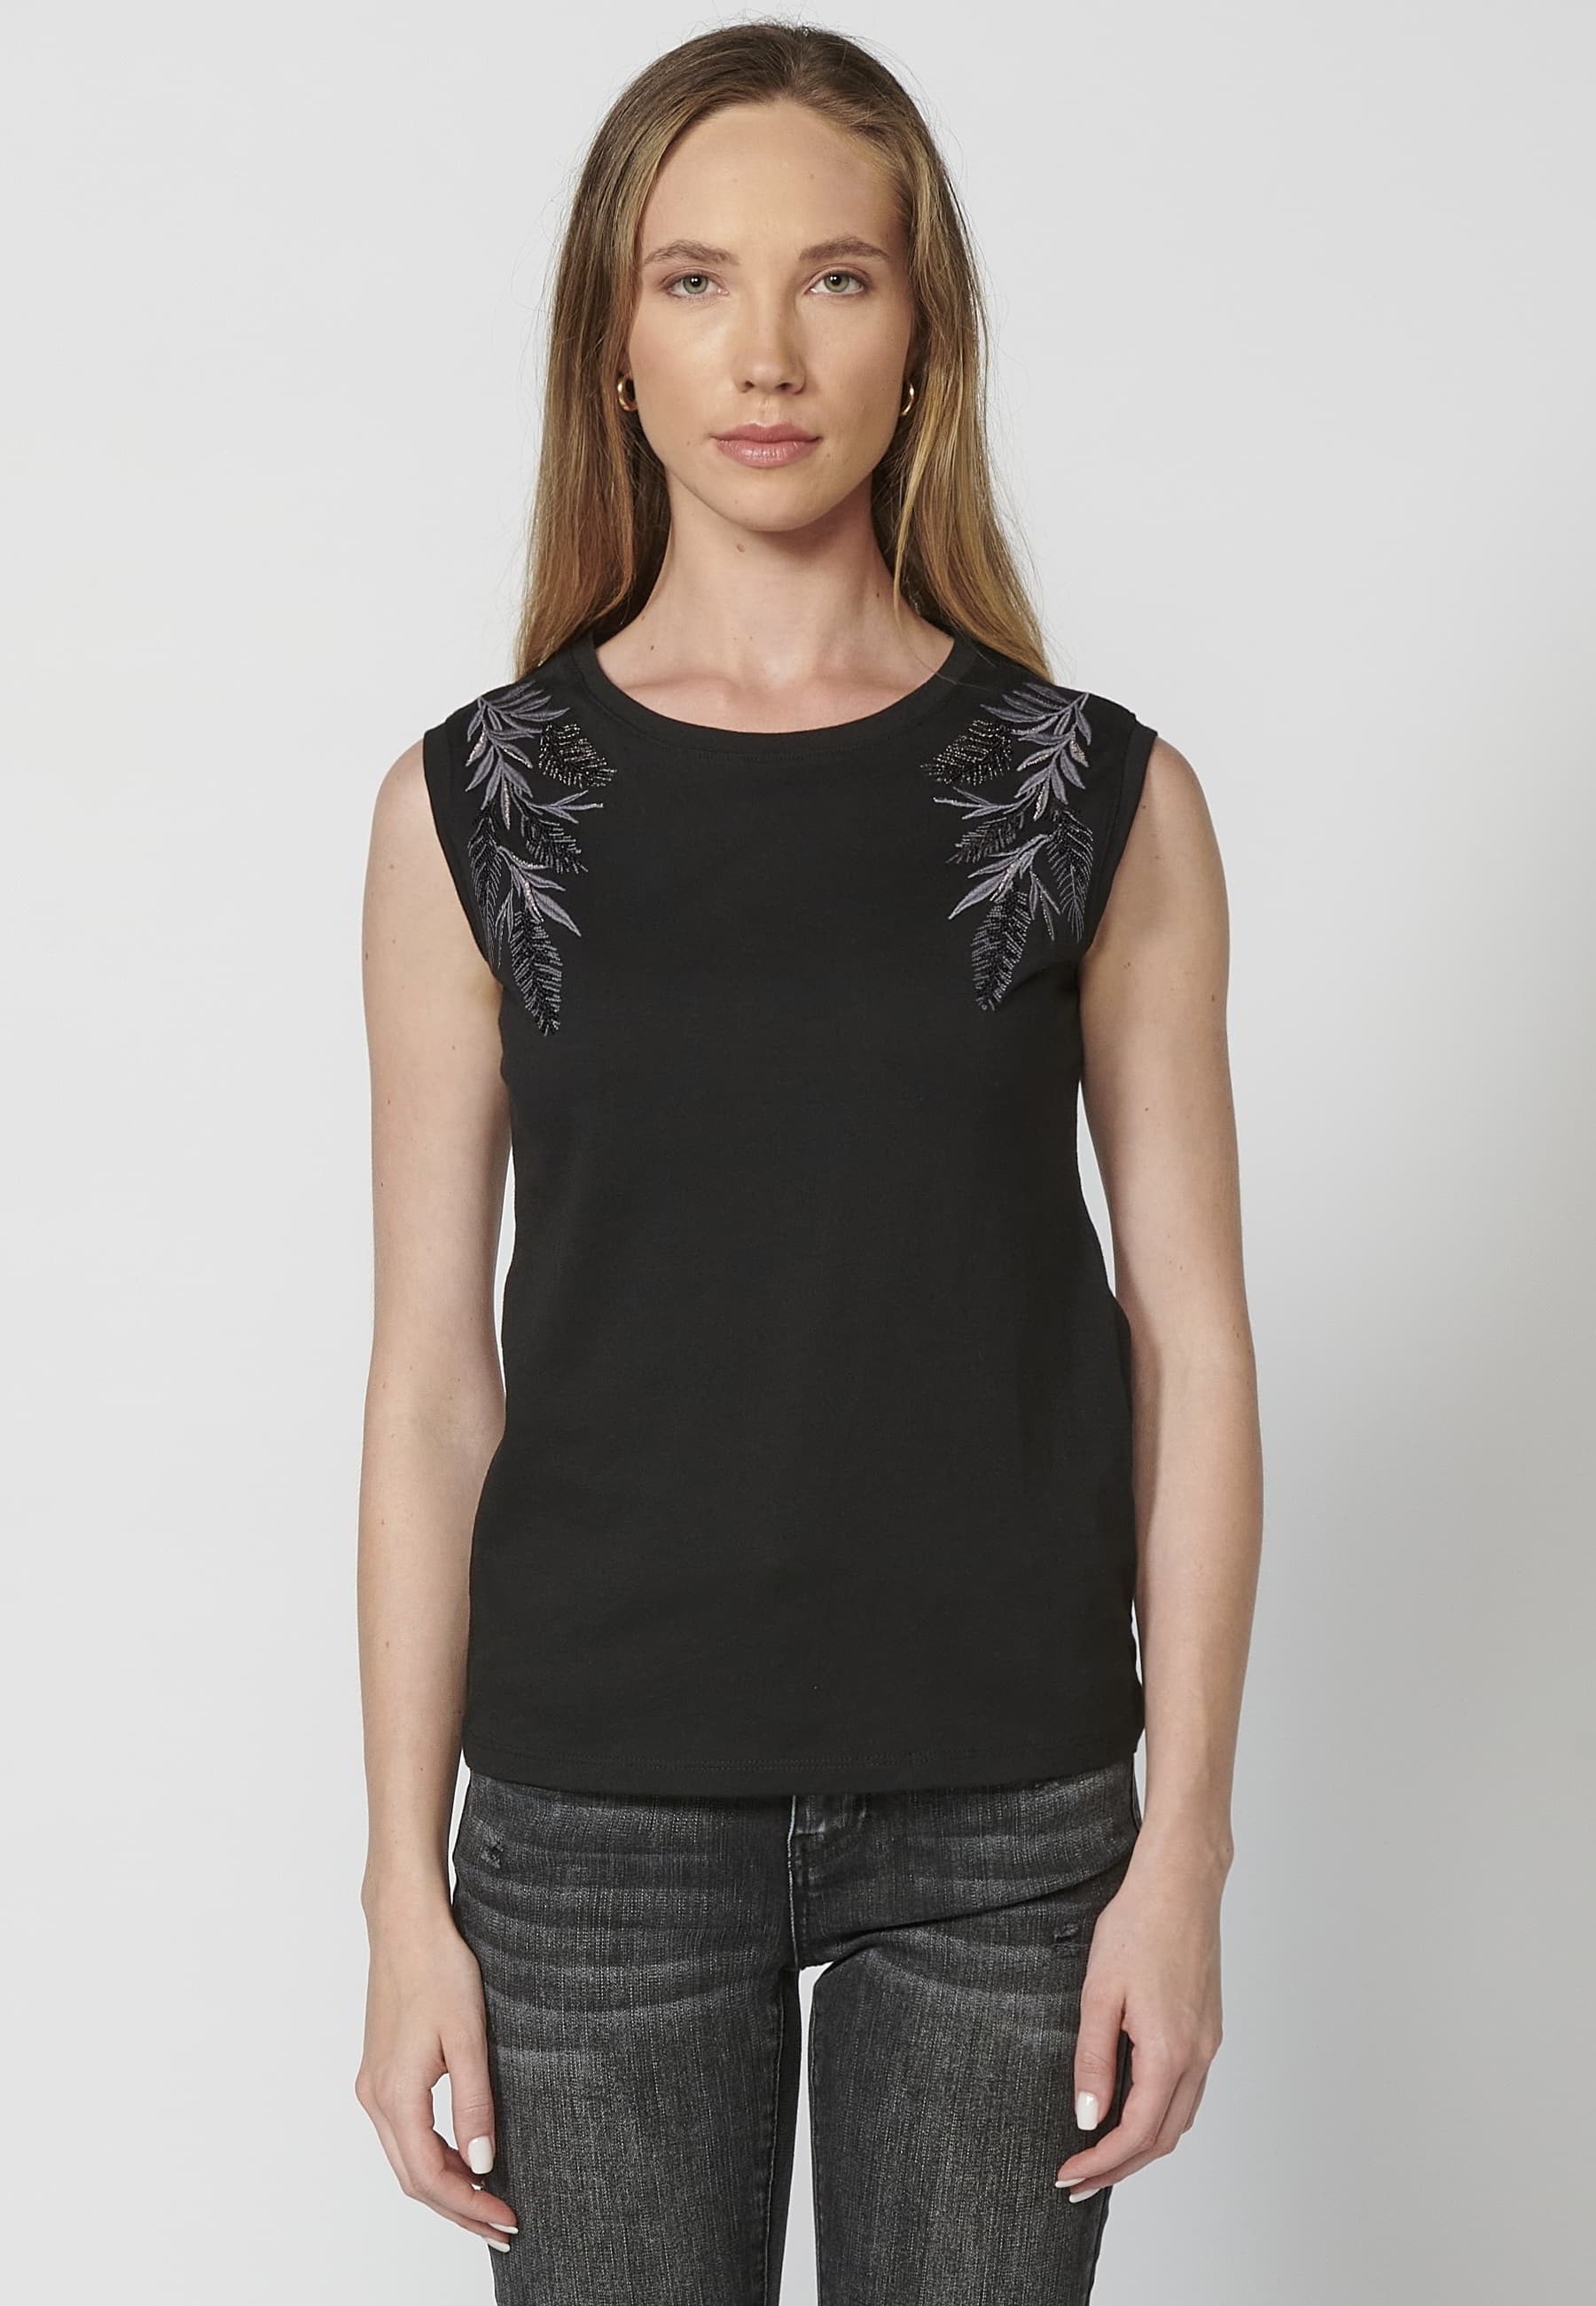 Camiseta top sin mangas de algodón cuello redondo estampado floral color negro para mujer 1